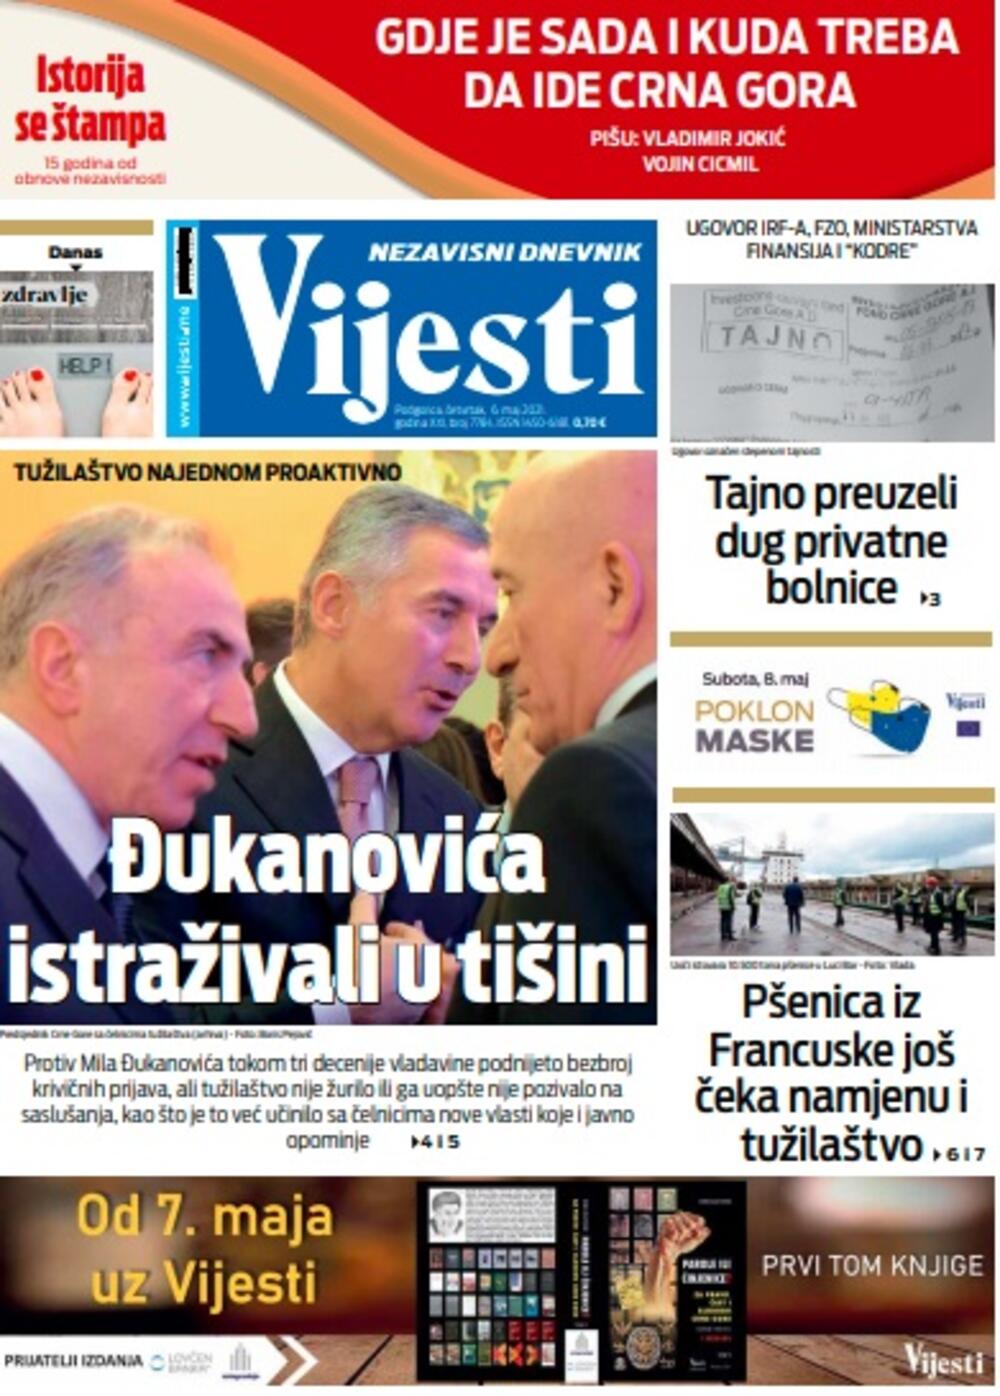 Naslovna strana "Vijesti" za četvrtak 6. maj 2021. godine, Foto: Vijesti